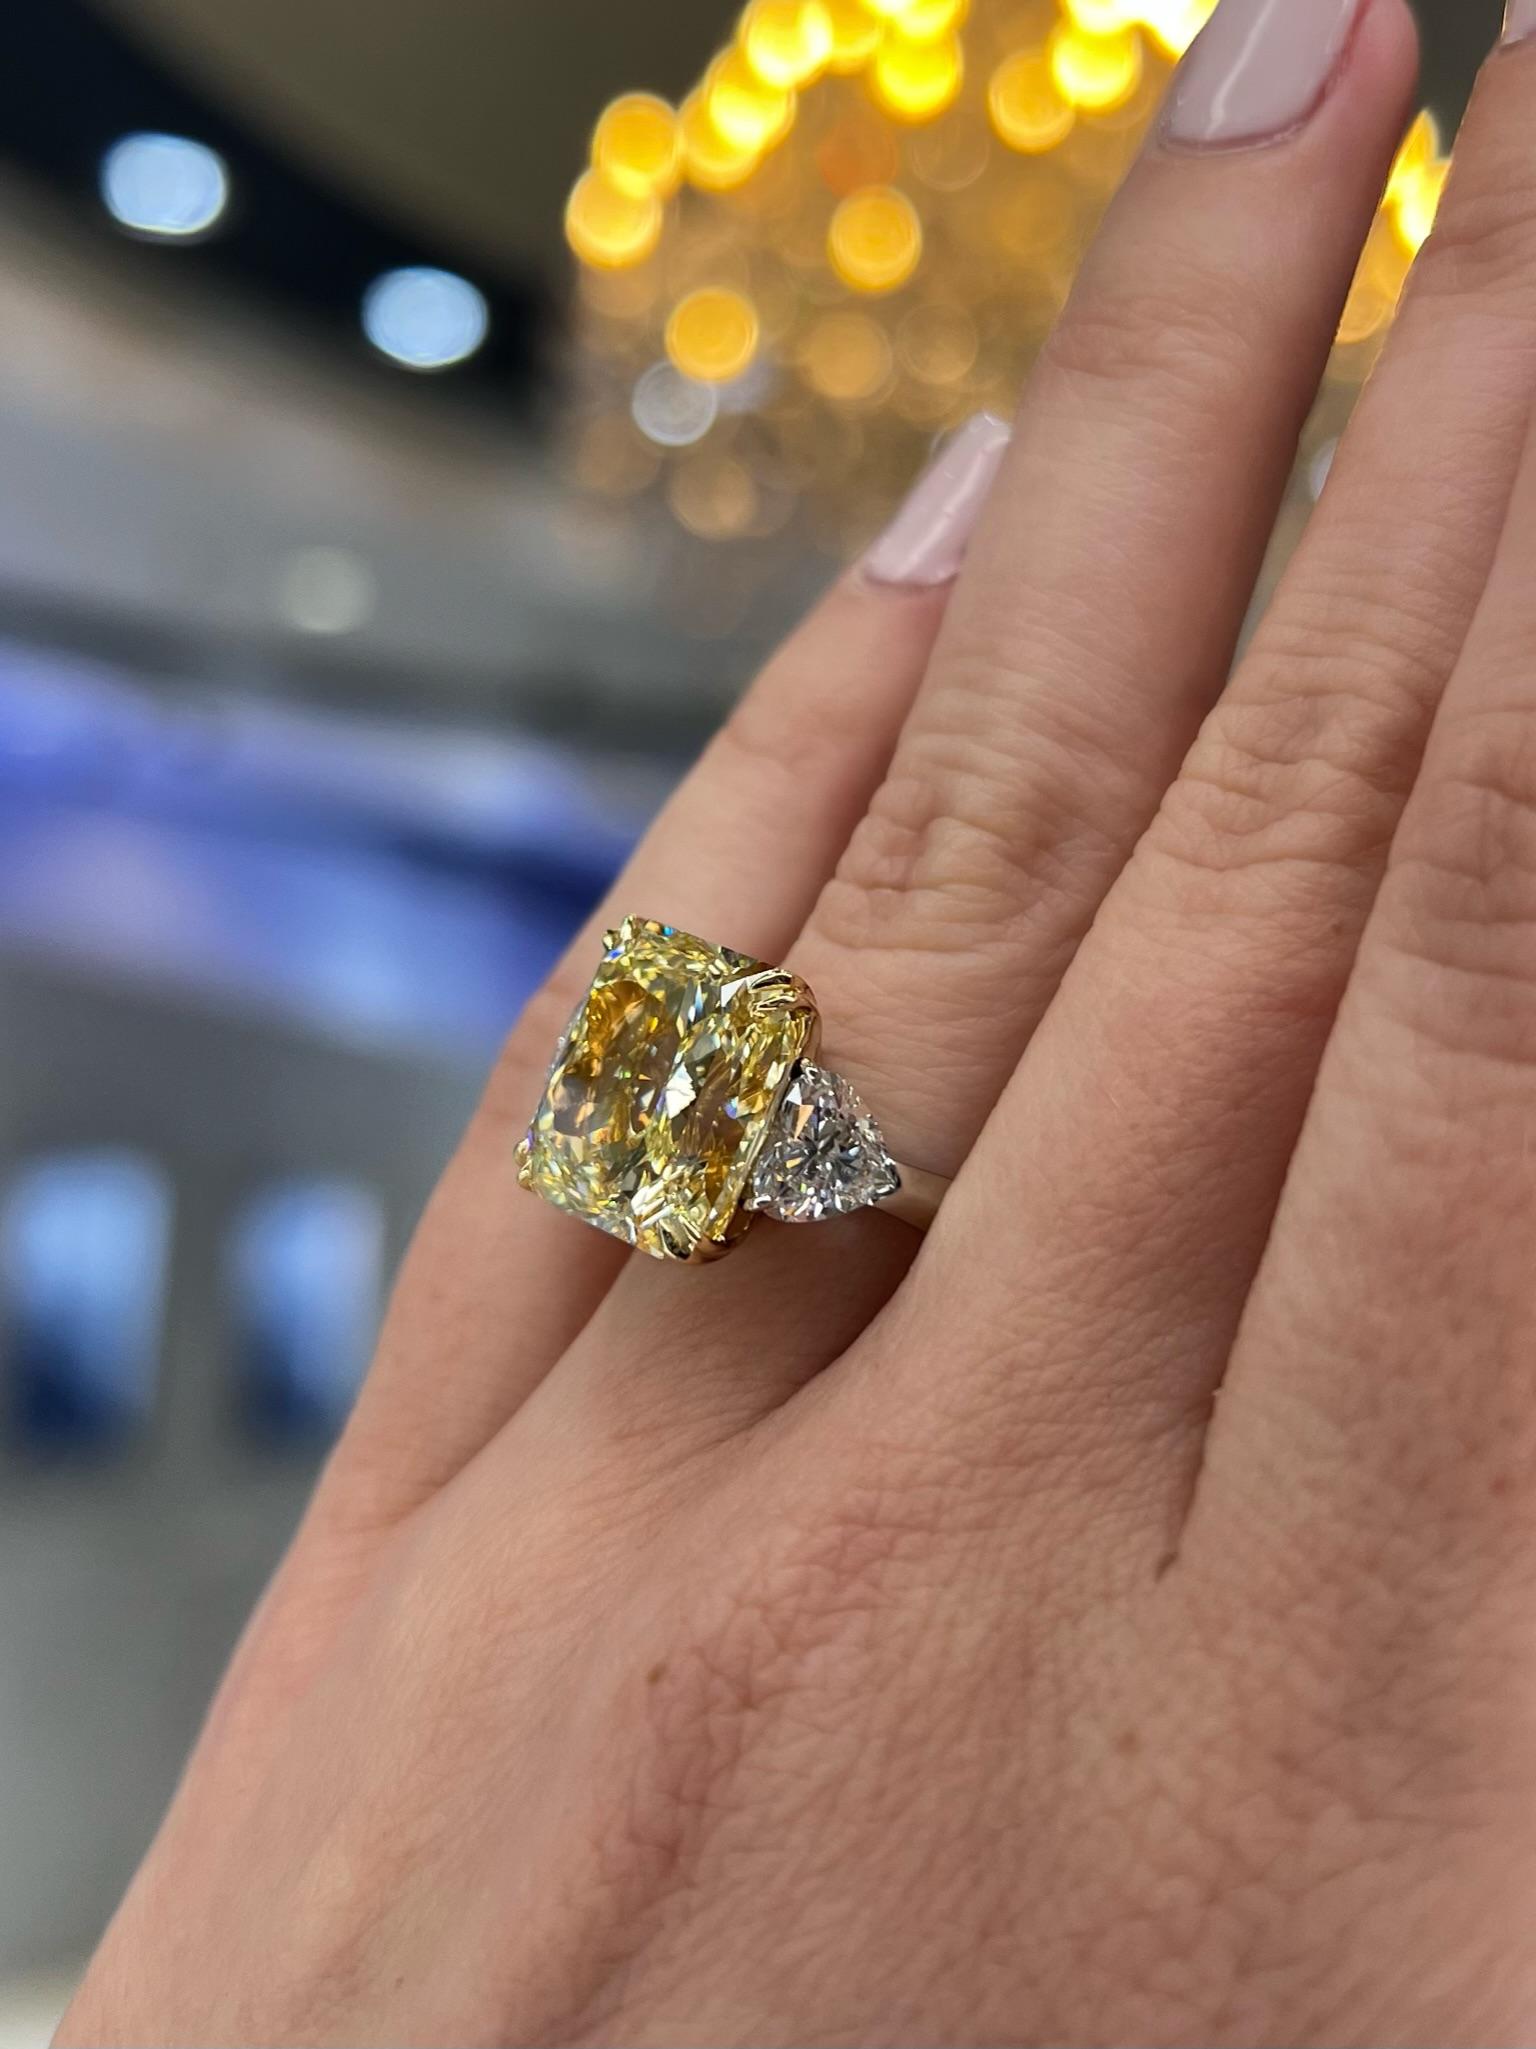 David Rosenberg 10.23 Radiant Fancy Yellow VVS1 GIA Diamond Engagement Ring For Sale 4